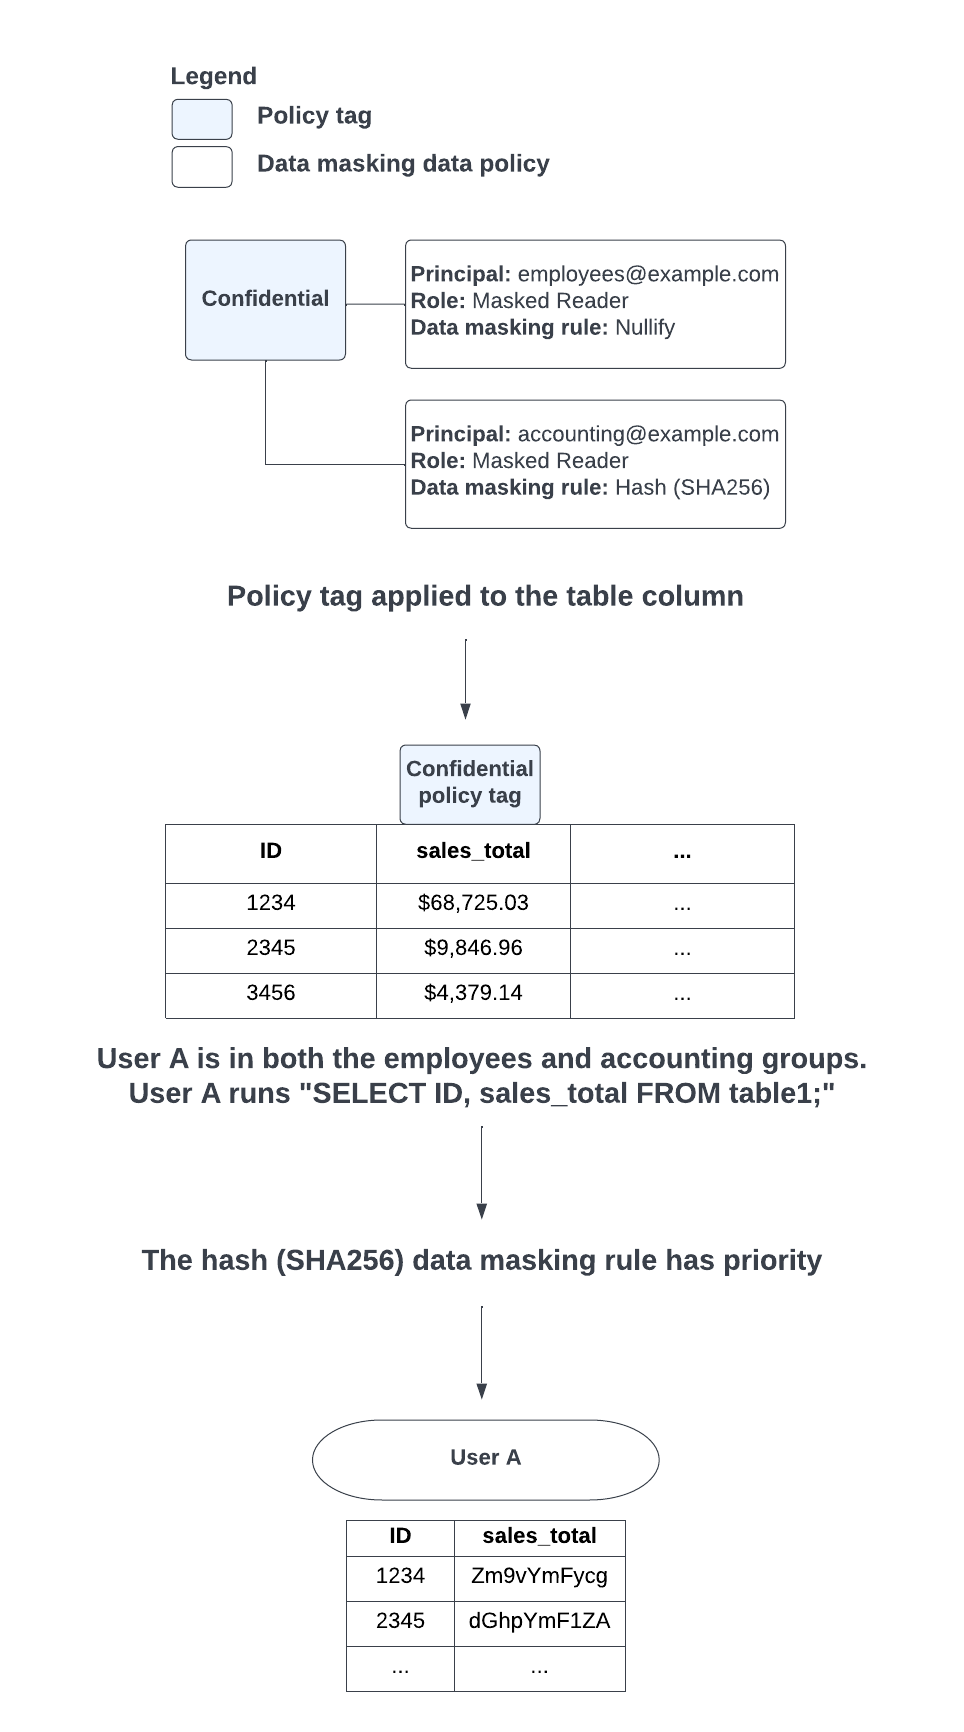 ユーザーが所属するグループにより、null 化データ マスキング ルールとハッシュ（SHA-256）データ マスキング ルールの適用が競合する場合は、ハッシュ（SHA-256）データ マスキング ルールが優先されます。